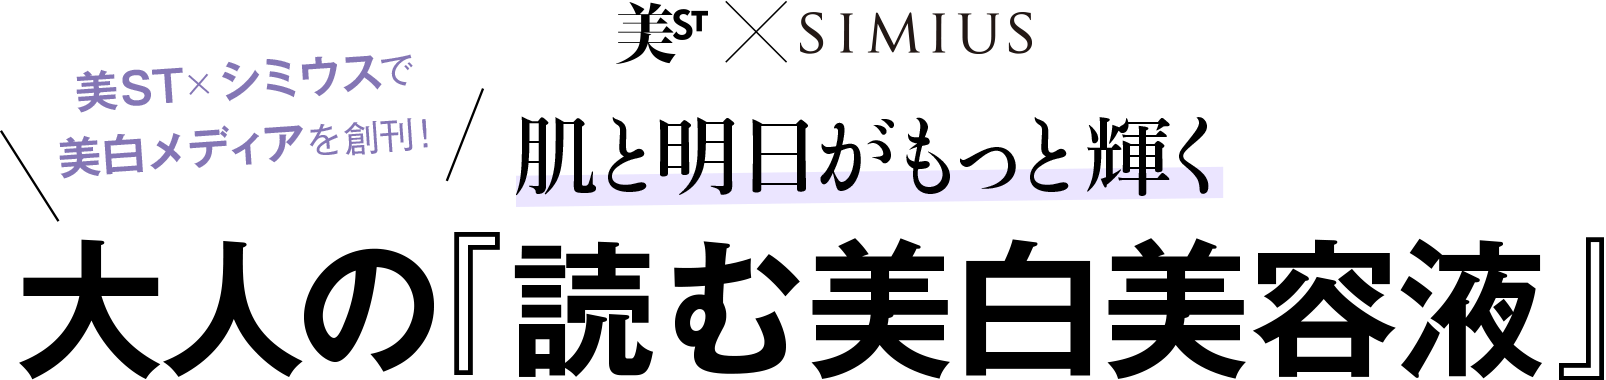 美ST×シミウス（SIMIUS）で美白メディアを創刊！肌と明日がもっと輝く 大人の「読む美白美容液」